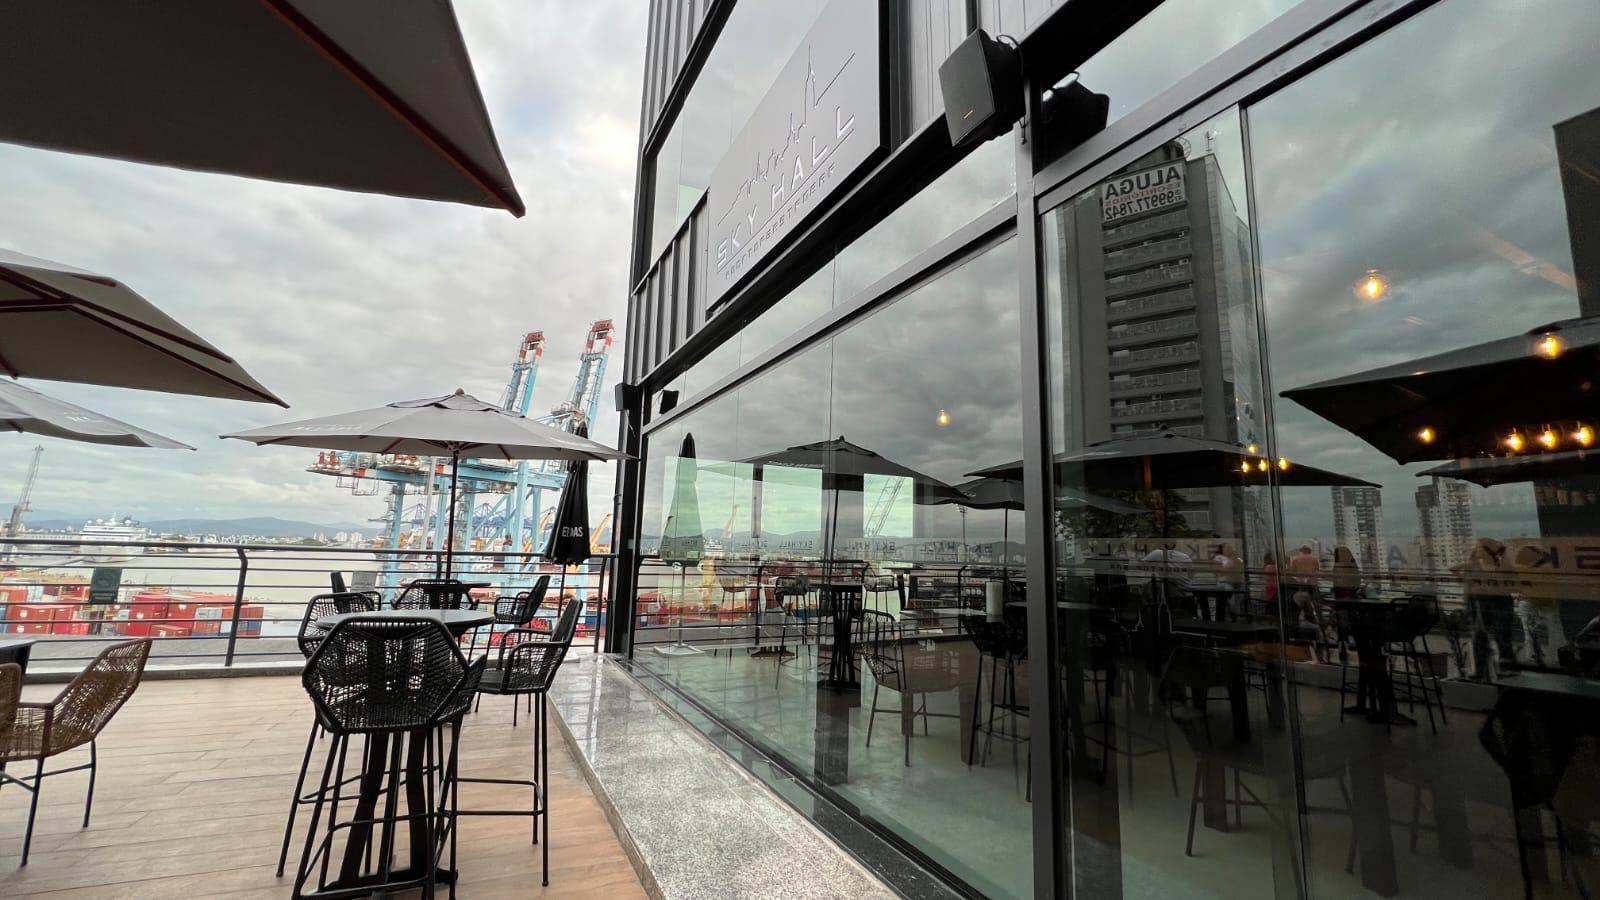 Sky Hall Rooftop Bar inaugura no Itajaí Shopping com a mais bela paisagem